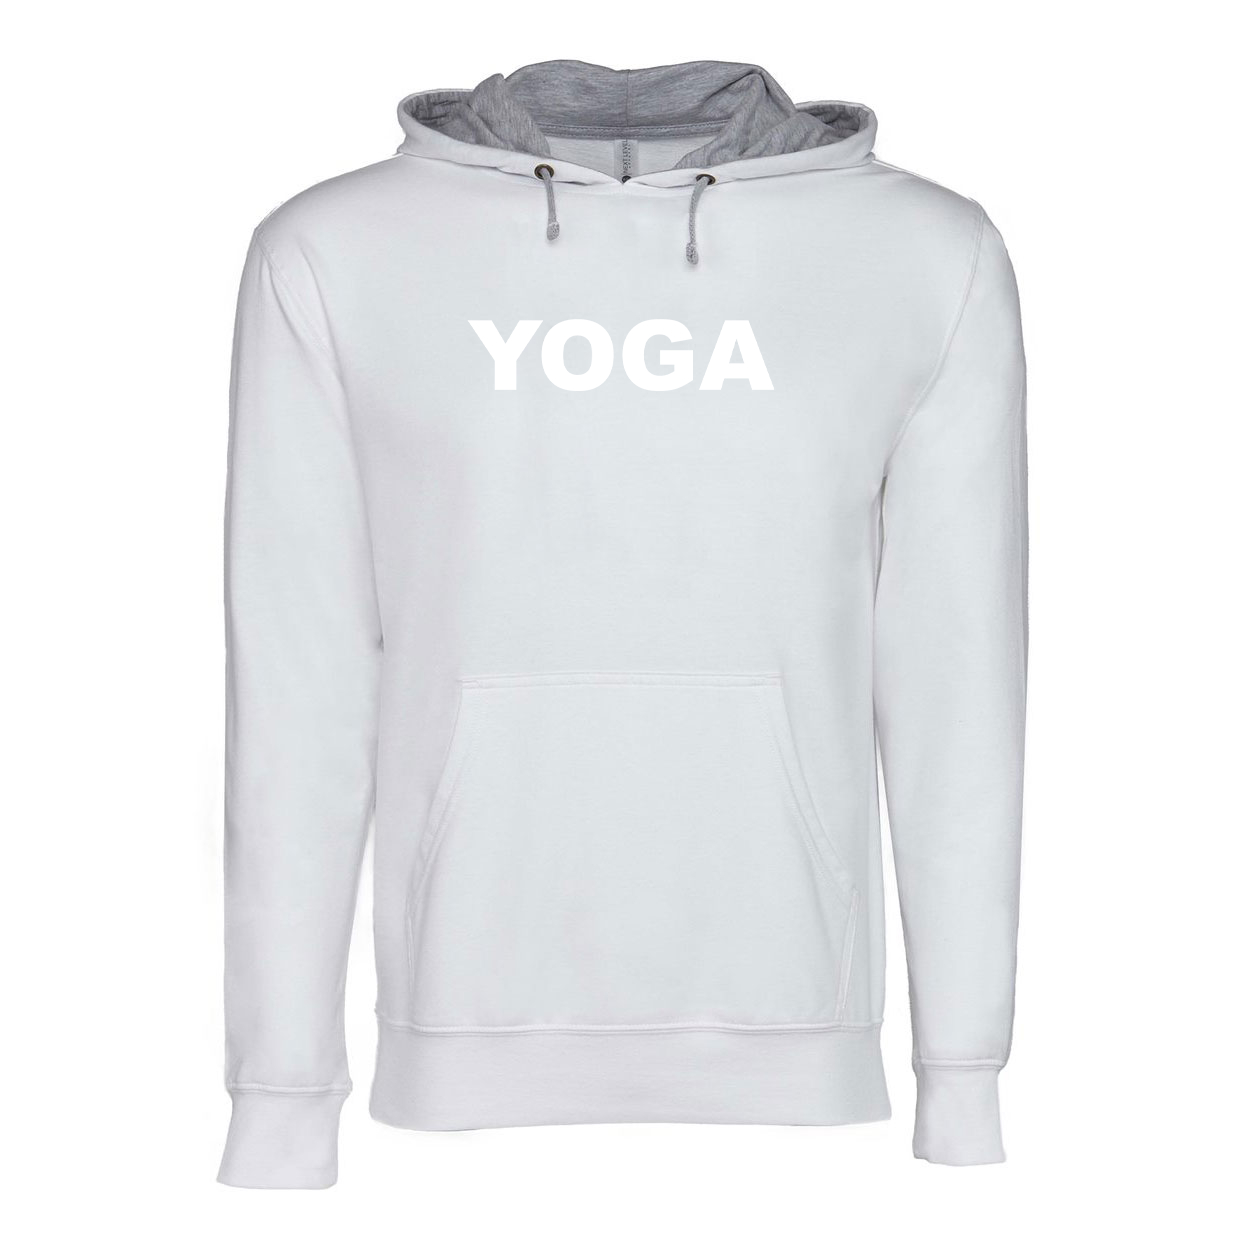 Yoga Brand Logo Classic Lightweight Sweatshirt White/Heather Gray 